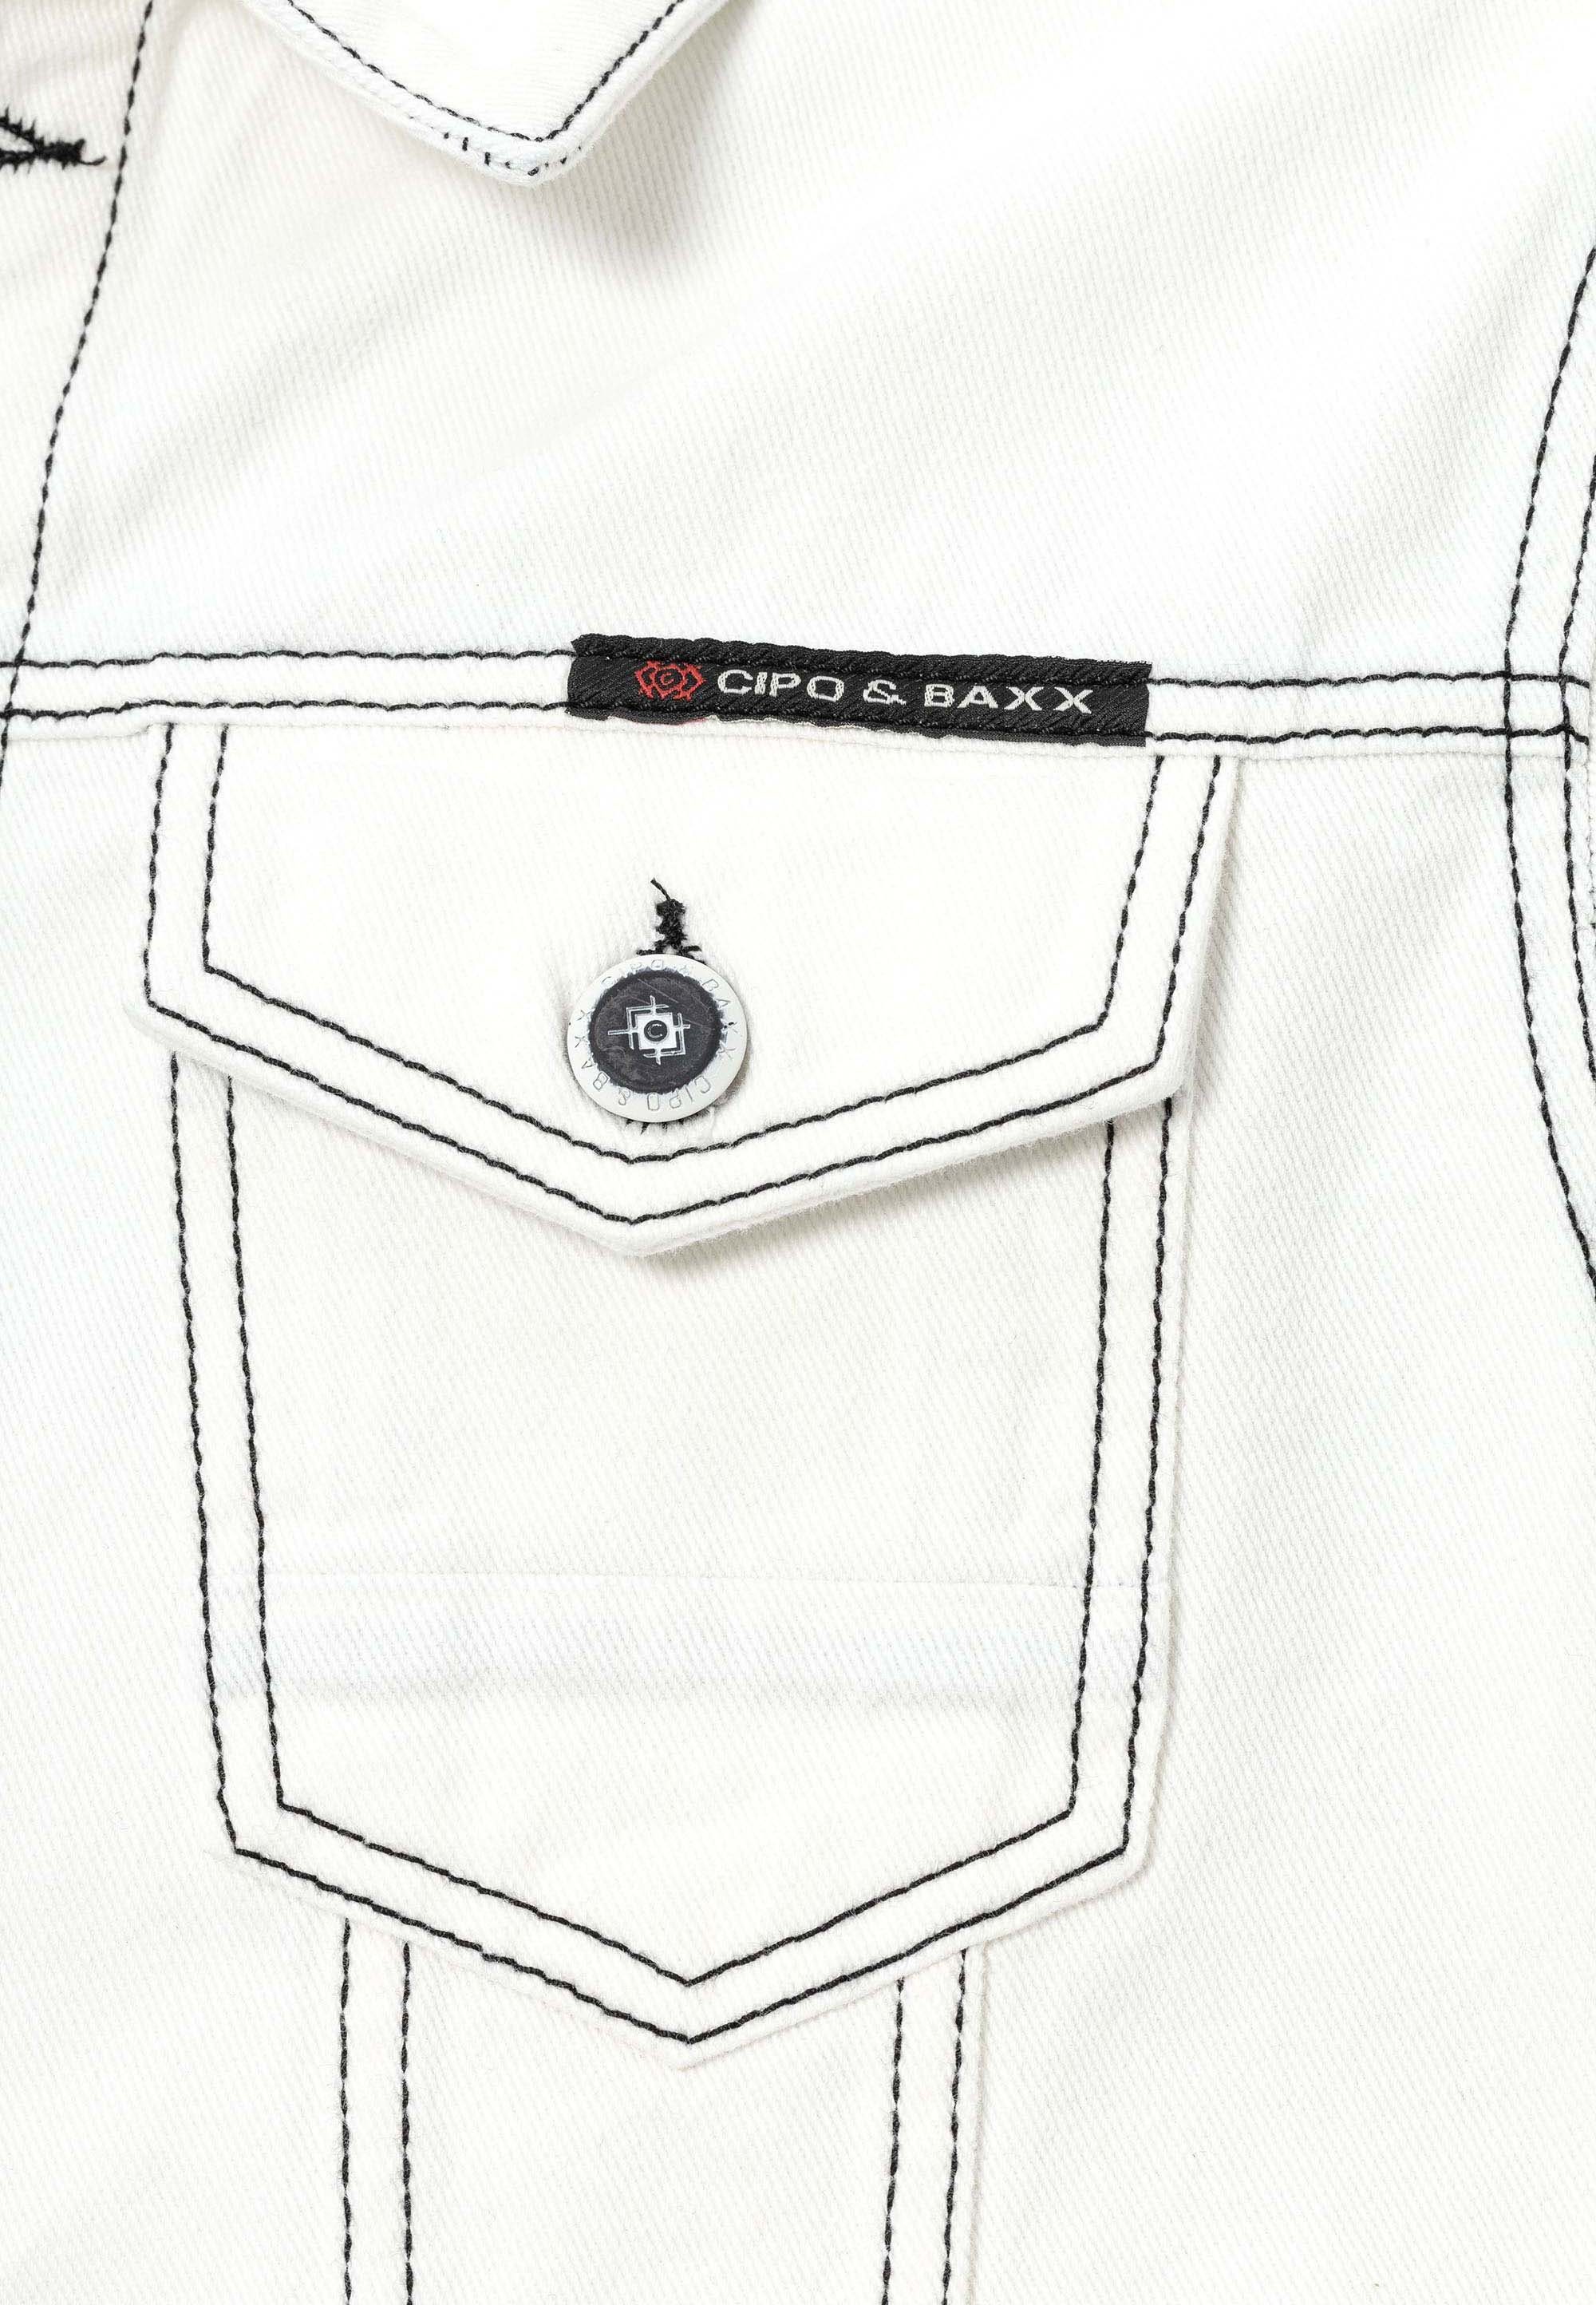 Jeansjacke & Cipo mit Baxx weiß Brusttaschen aufgesetzten